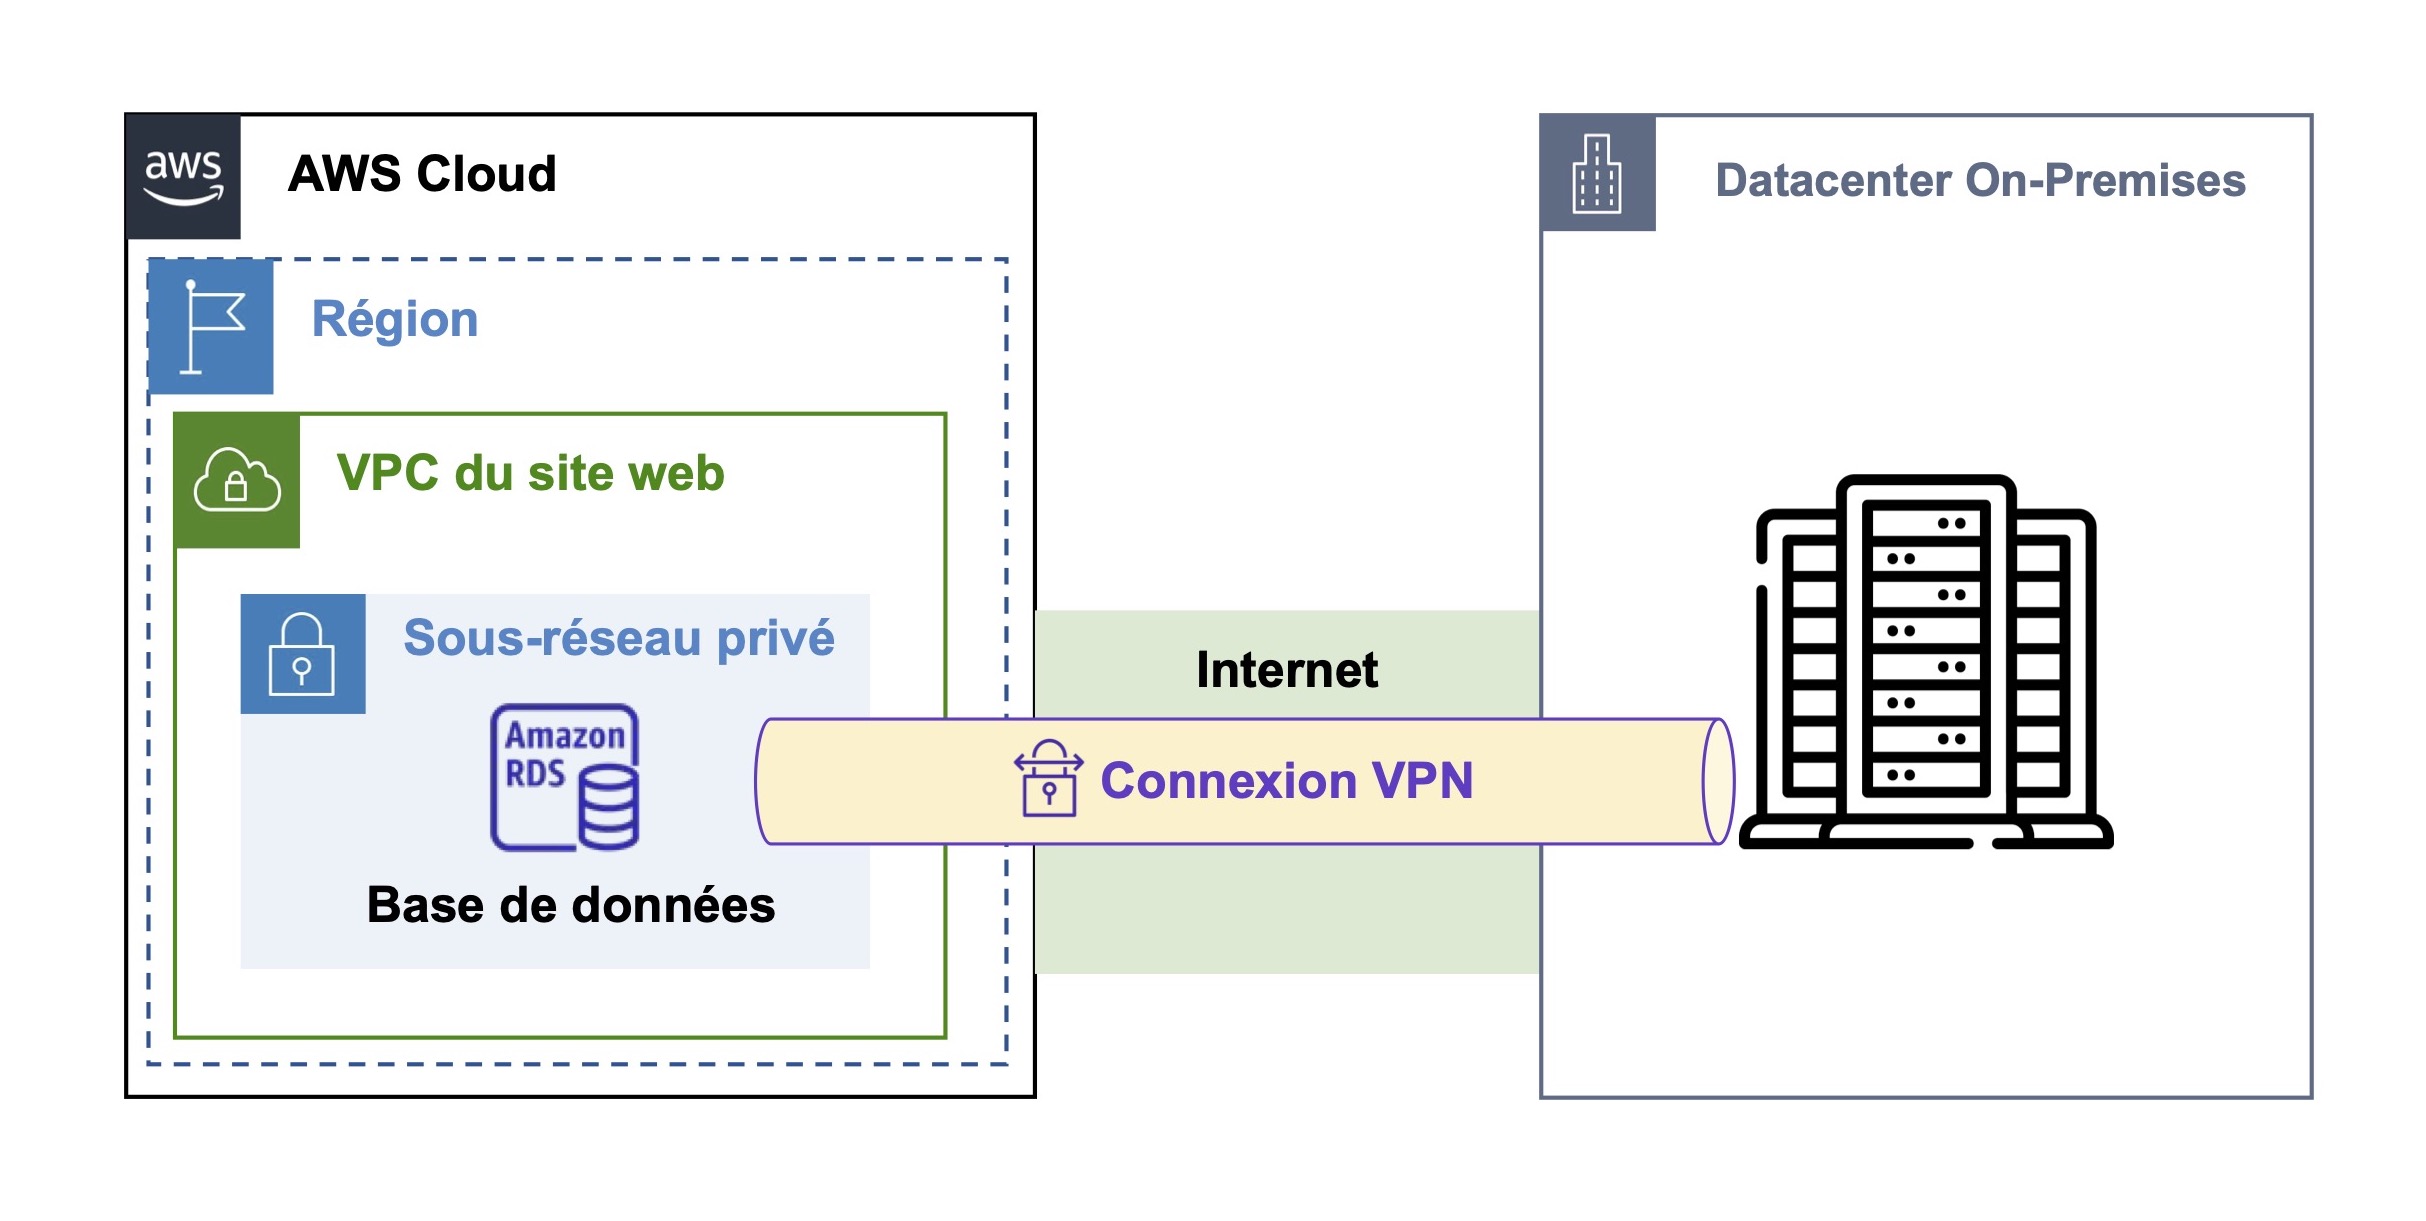 Un sous-réseau privé est connecté avec le datacenter on-premises via une connexion VPN